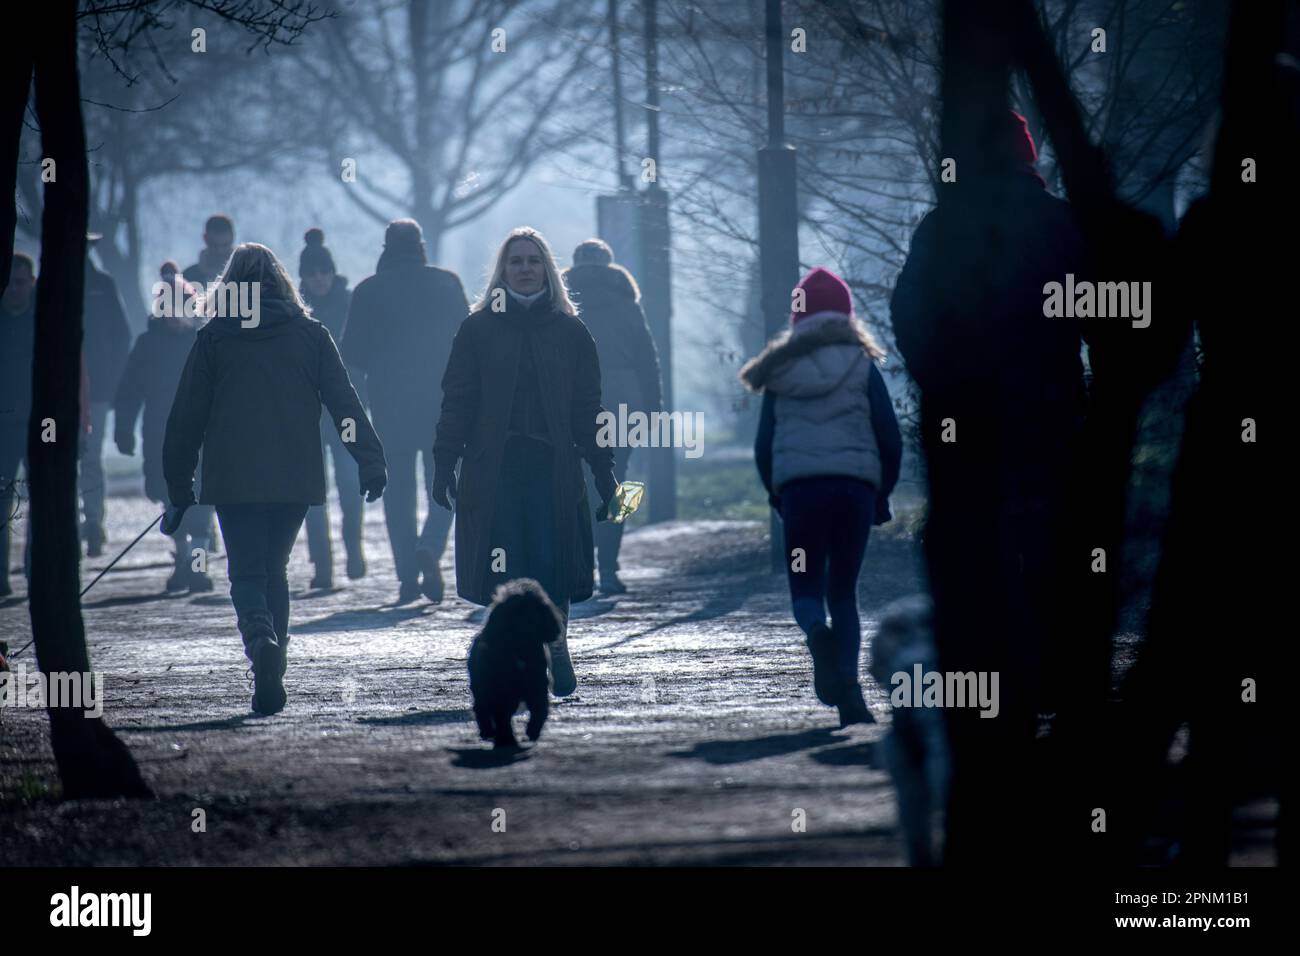 Walking in a misty London park in winter Stock Photo